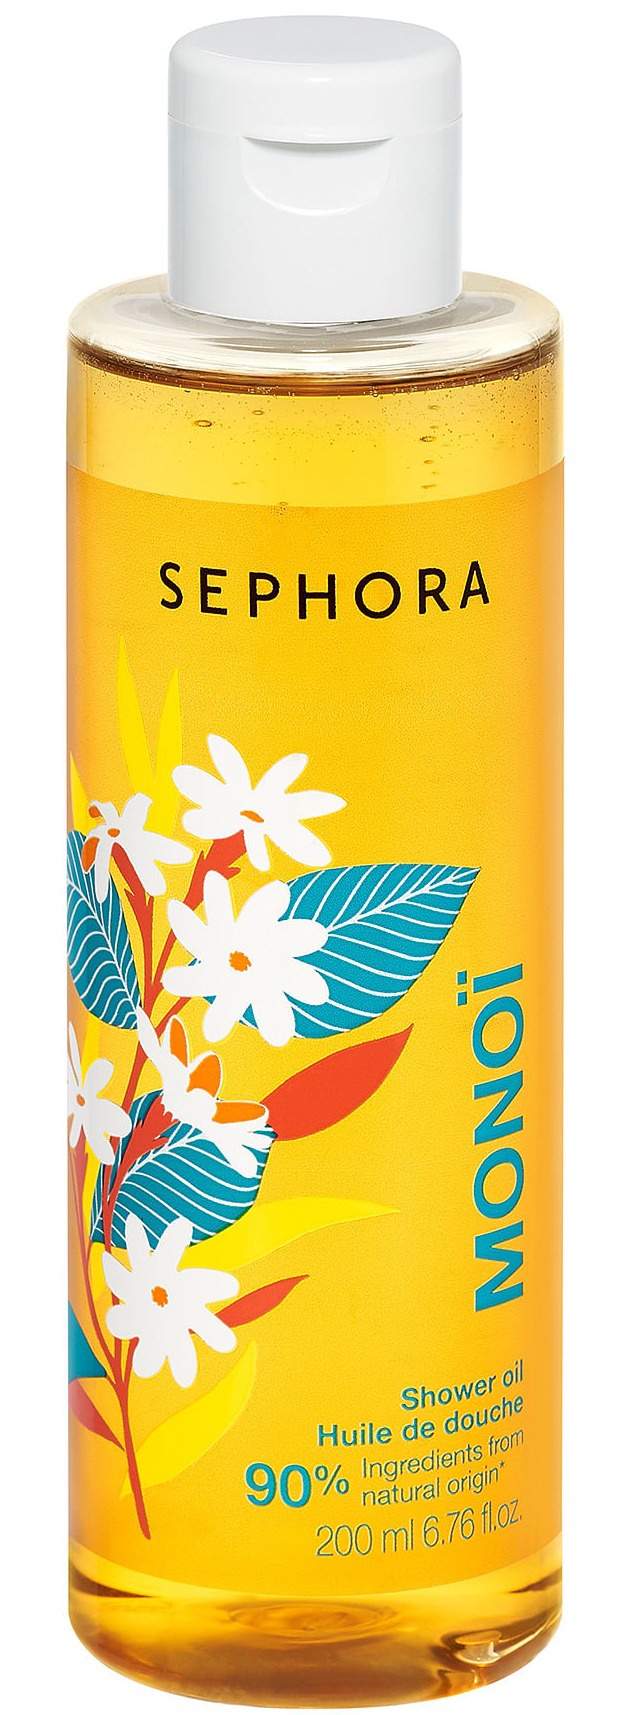 Sephora Shower Oil - Monoi